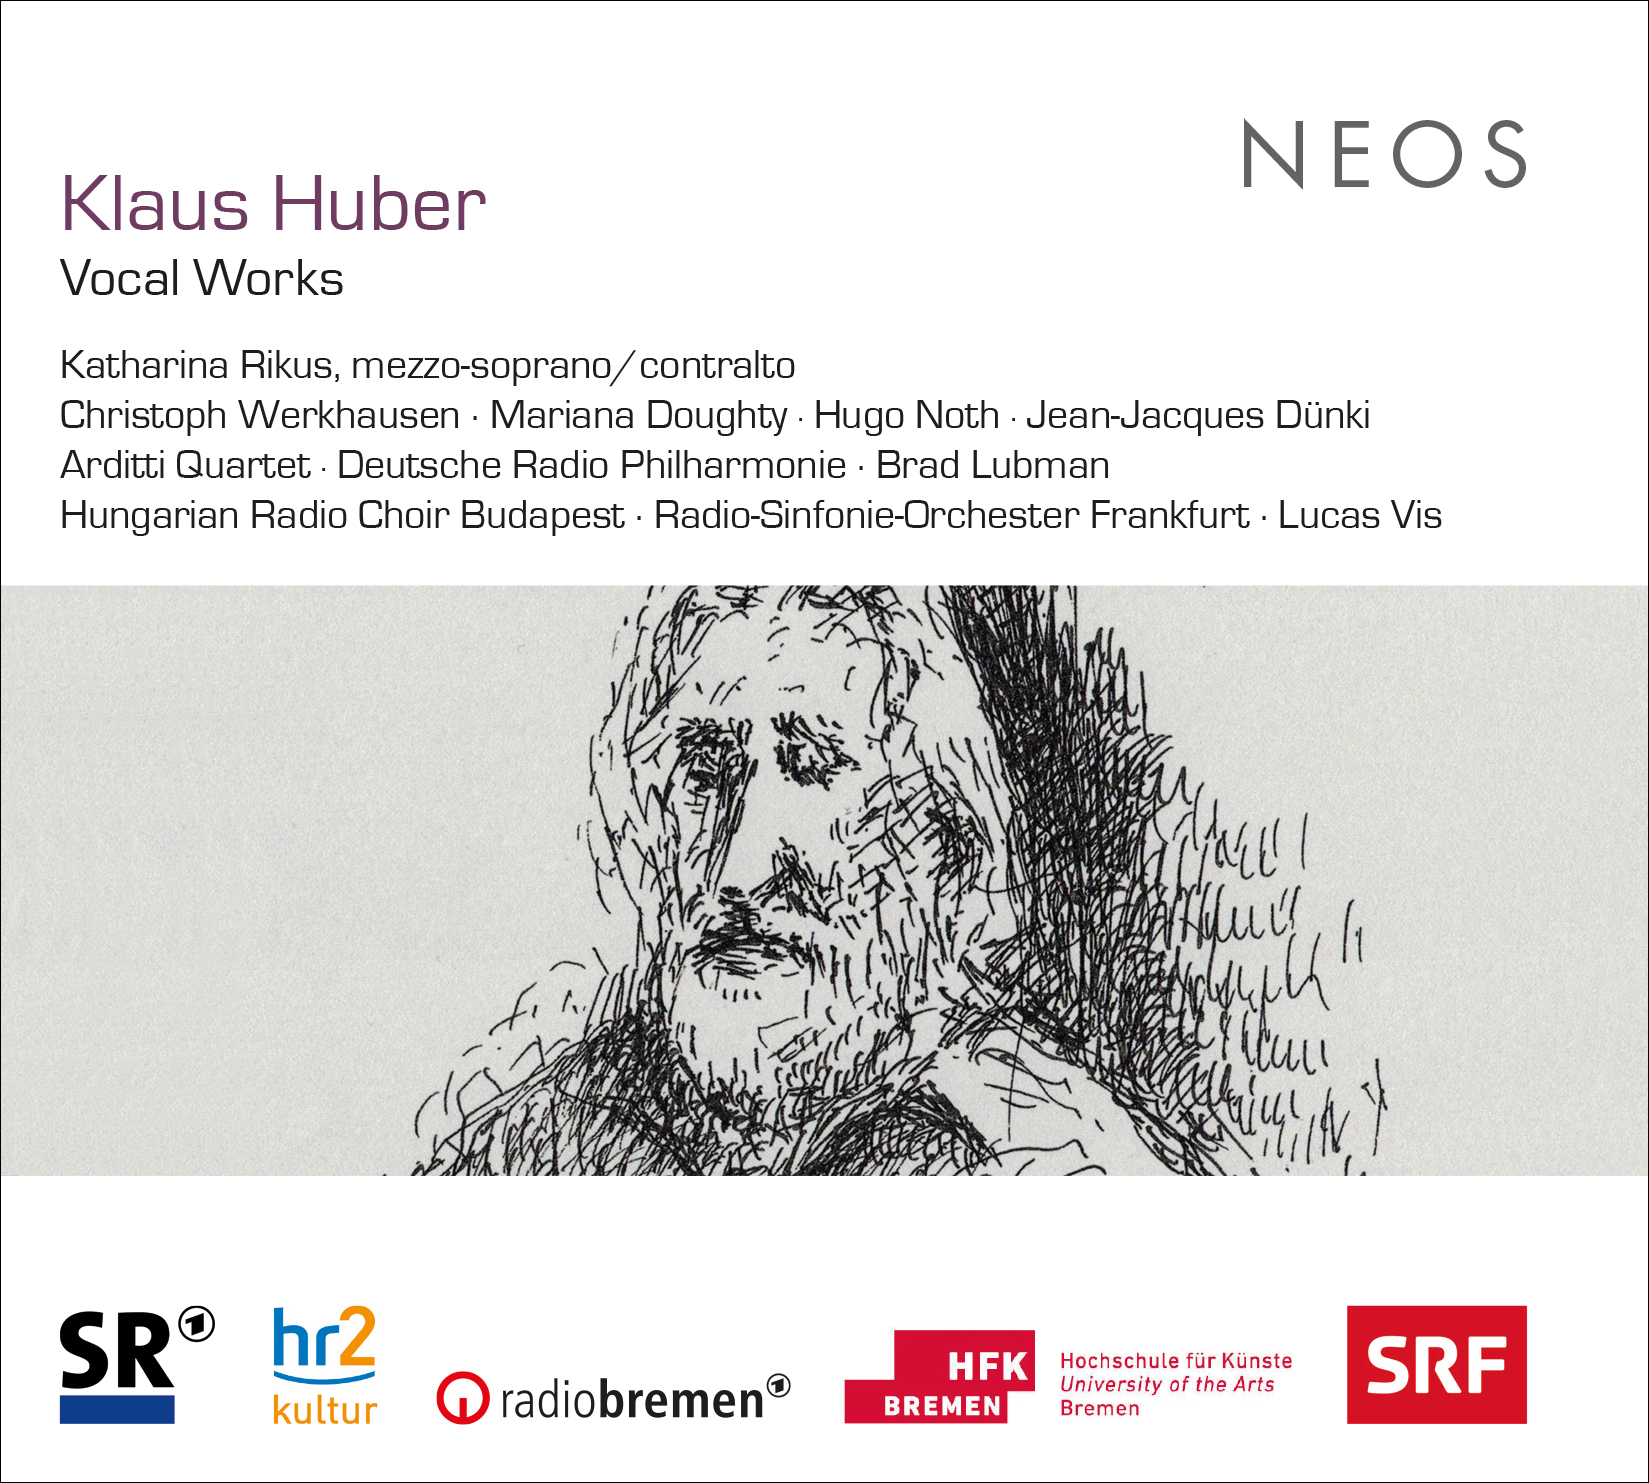 Huber (III de III): Klaus, la música como meditación y protesta